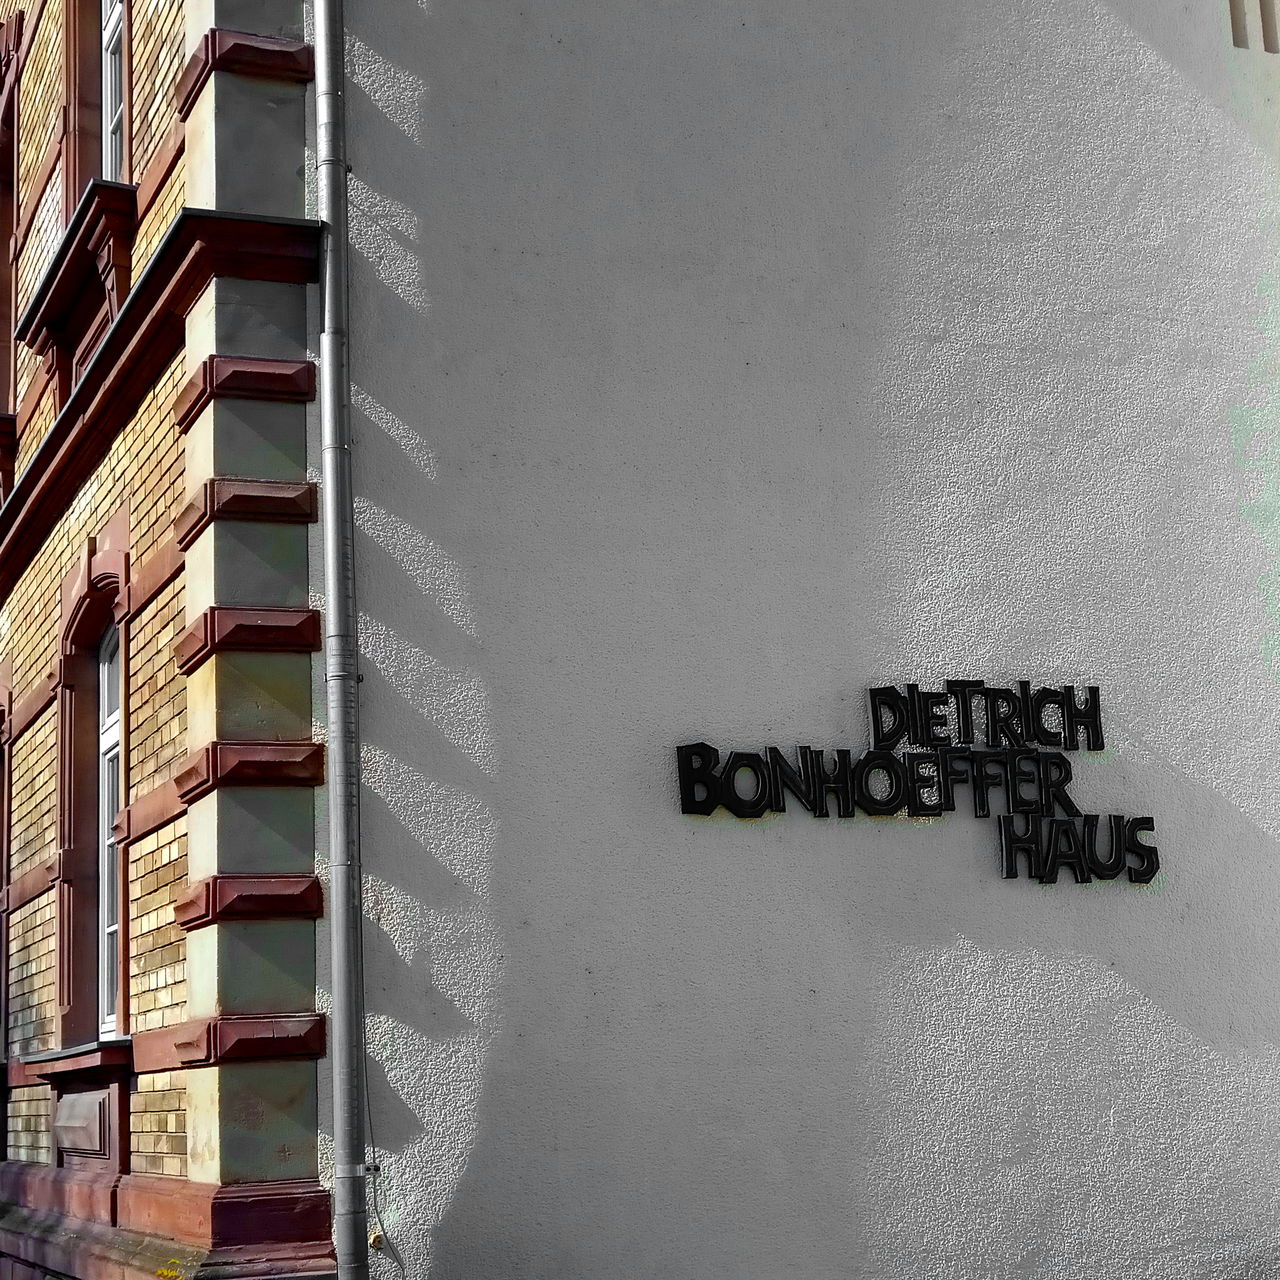 Die Aufschrift Dietrich Bonhoefer Haus aus gusseisernen schwarzen Lettern an der weißen Wand einer Hausecke, die günstig vom Licht und Schatten der gezackten Mauerecke und Dachrinne gestreift wird und somit eine unvermutete Tiefe erfährt.